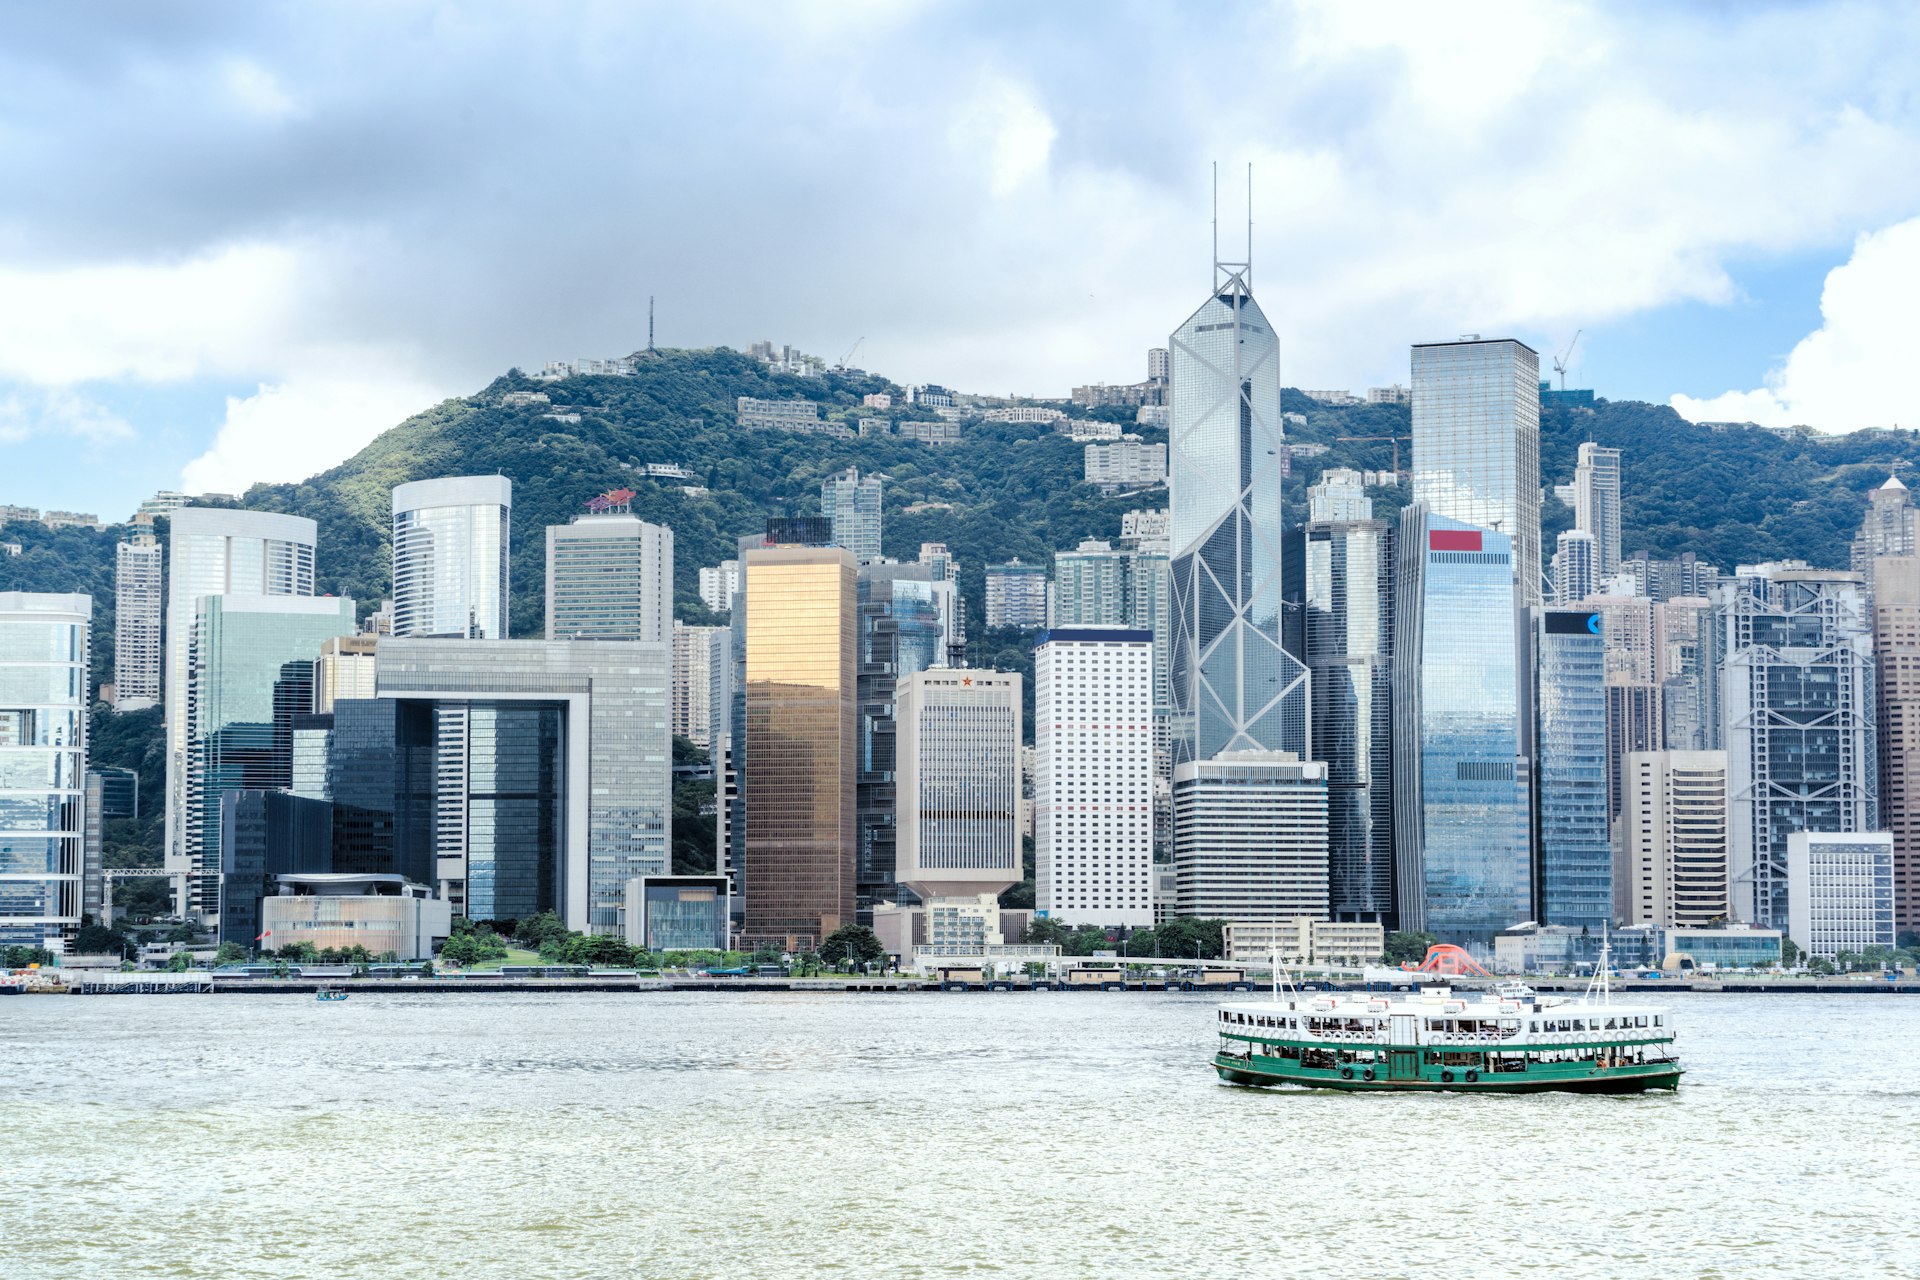 Hong Kong's Star Ferry travels between Hong Kong Island and Kowloon